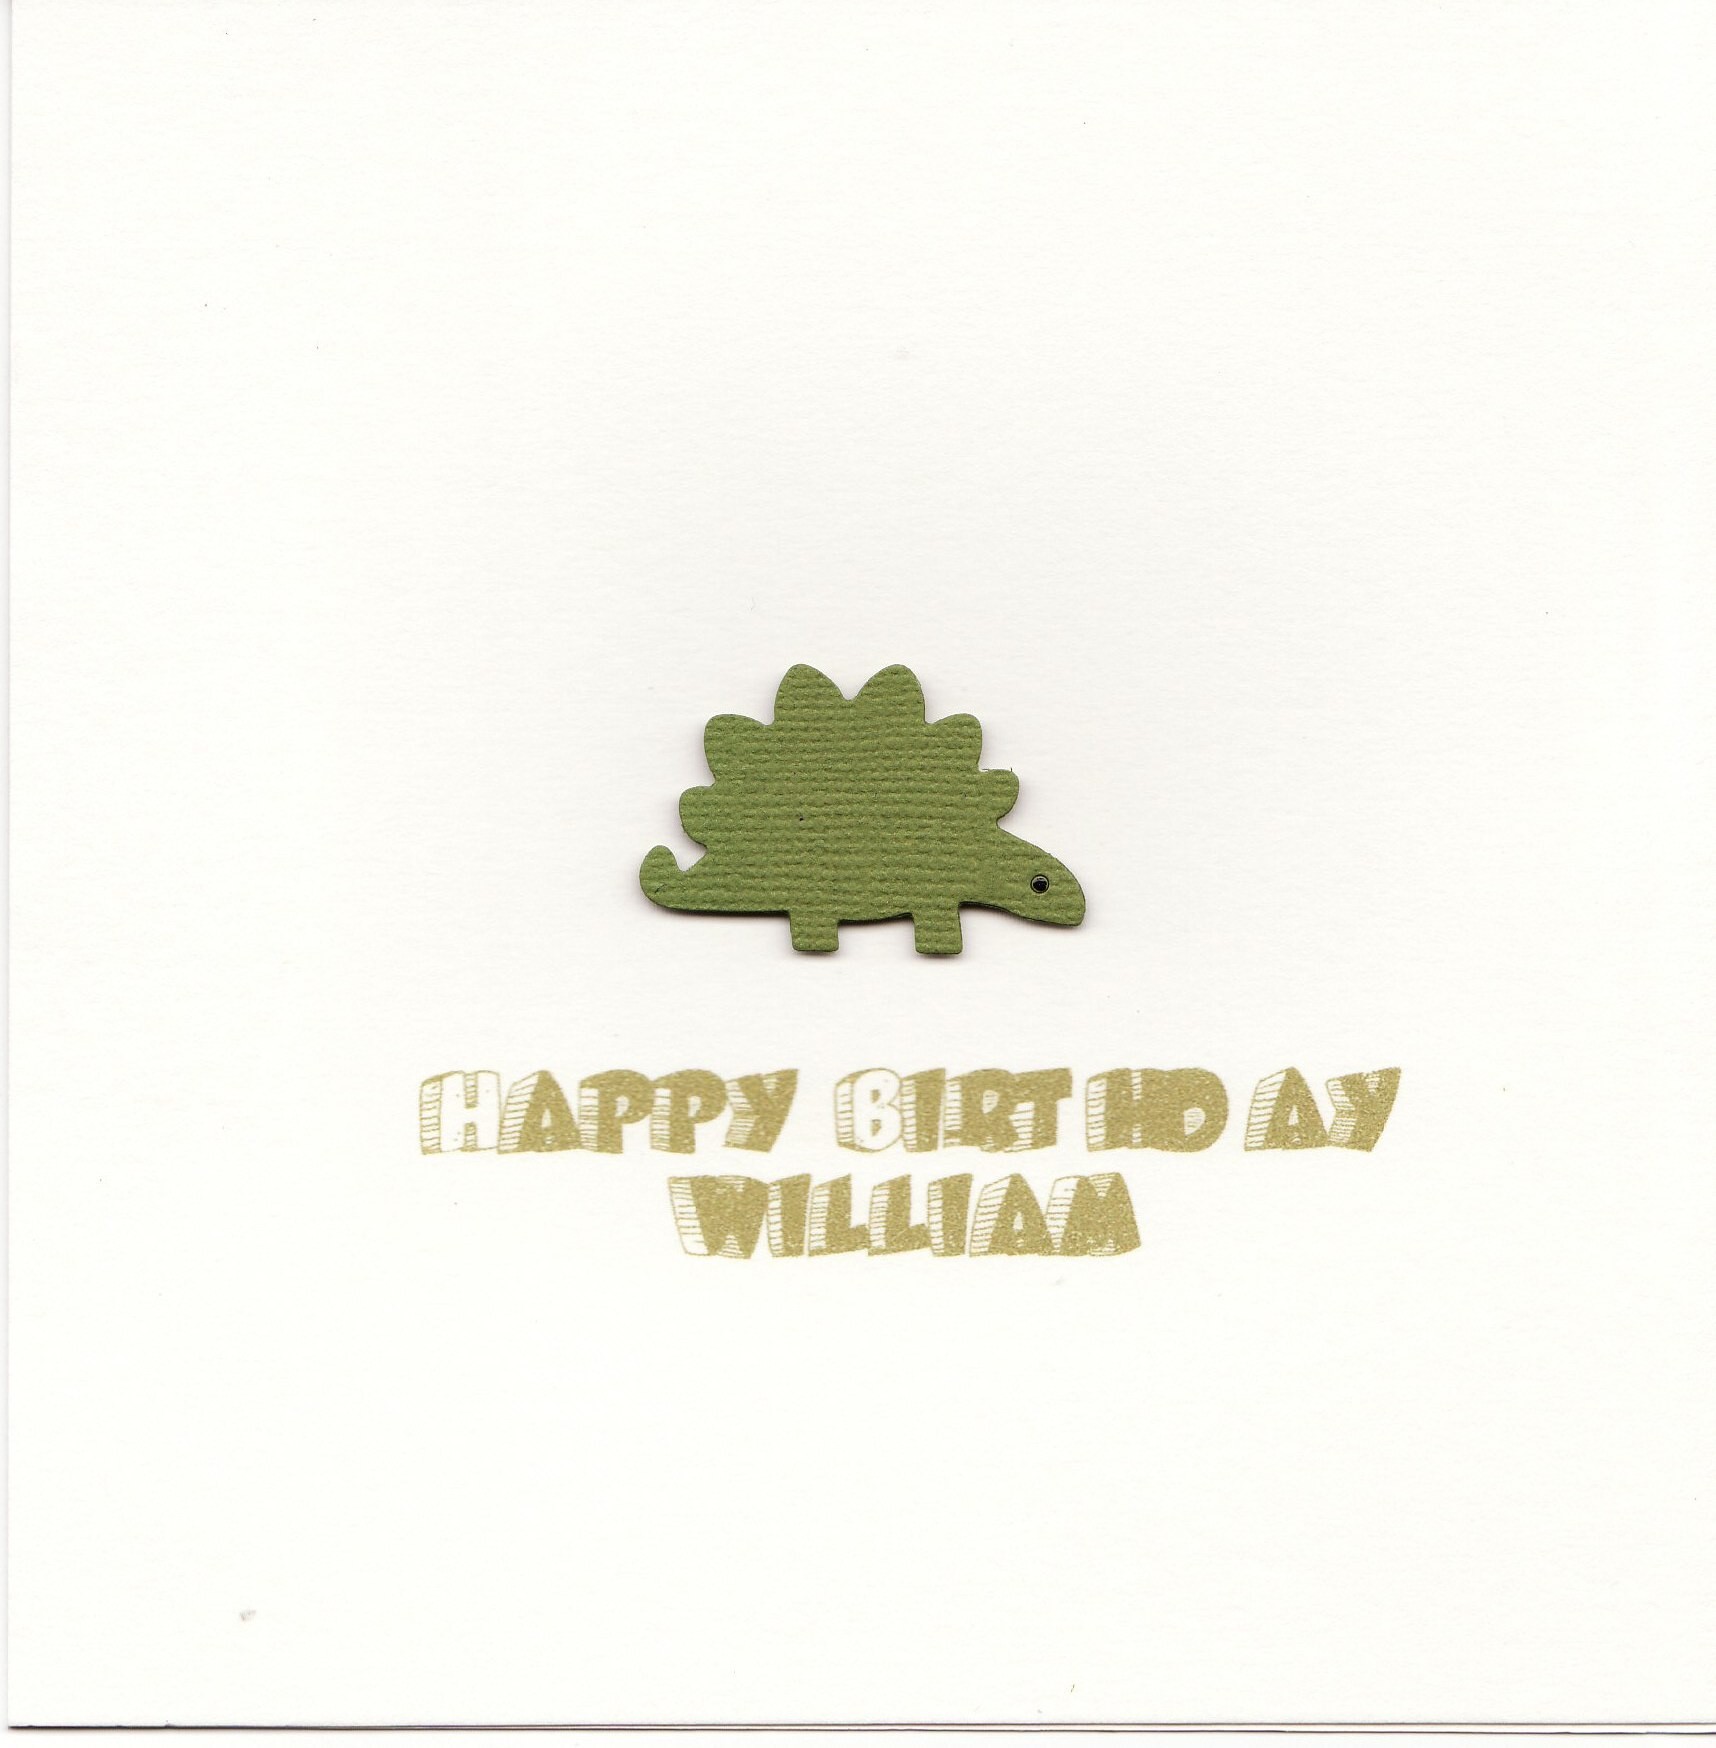 Birthday Card - Dinosaur